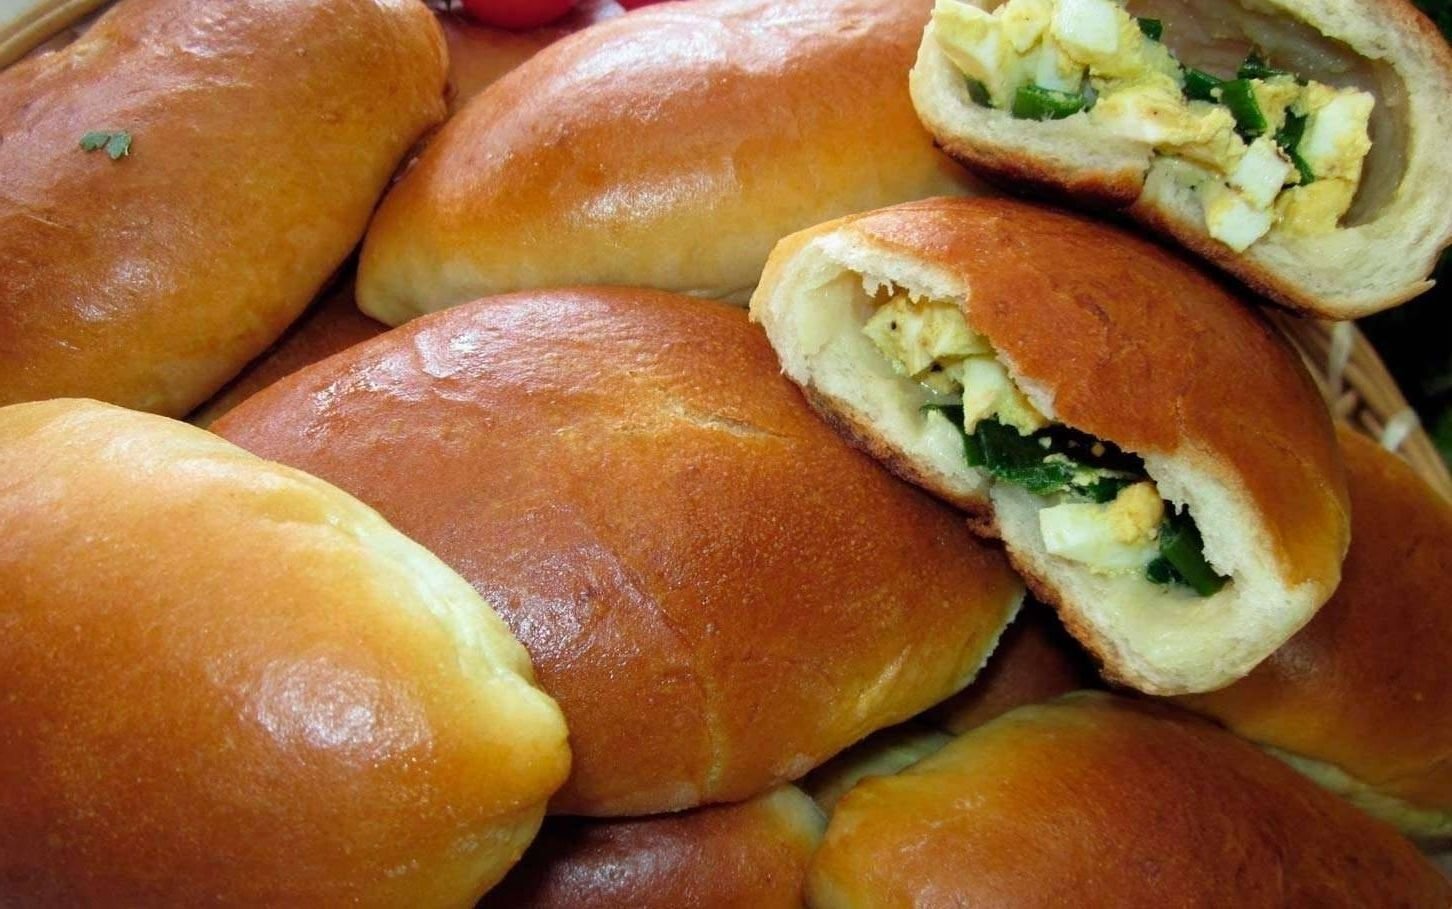 Пирожки с луком и яйцом жареные на сковороде рецепт на дрожжах фото пошагово